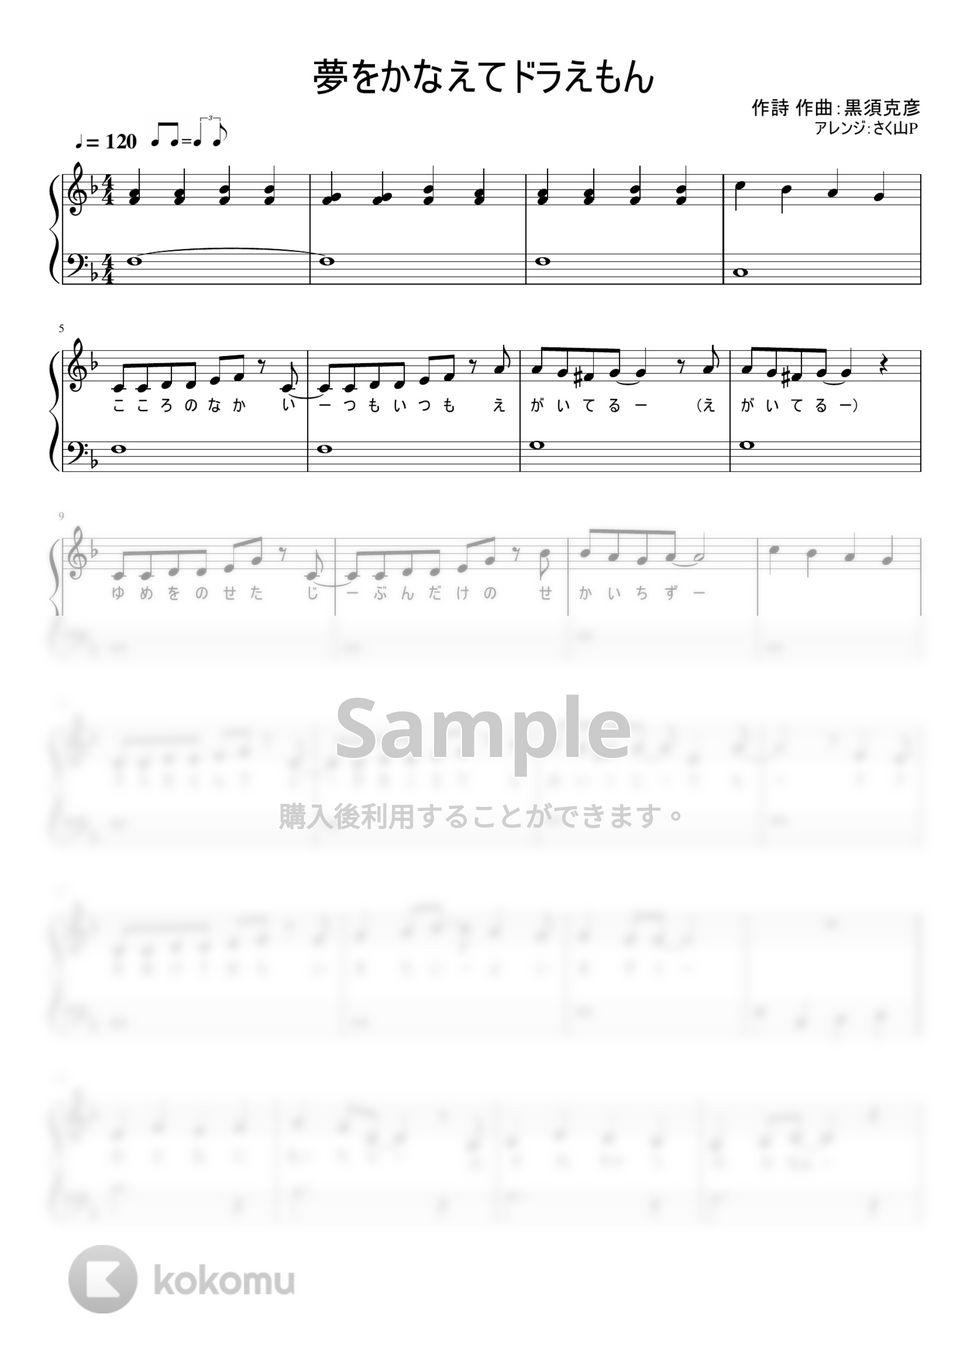 ドラえもん - 夢をかなえてドラえもん (ワンコーラス / 歌詞付き / 簡単ピアノ) by さく山P